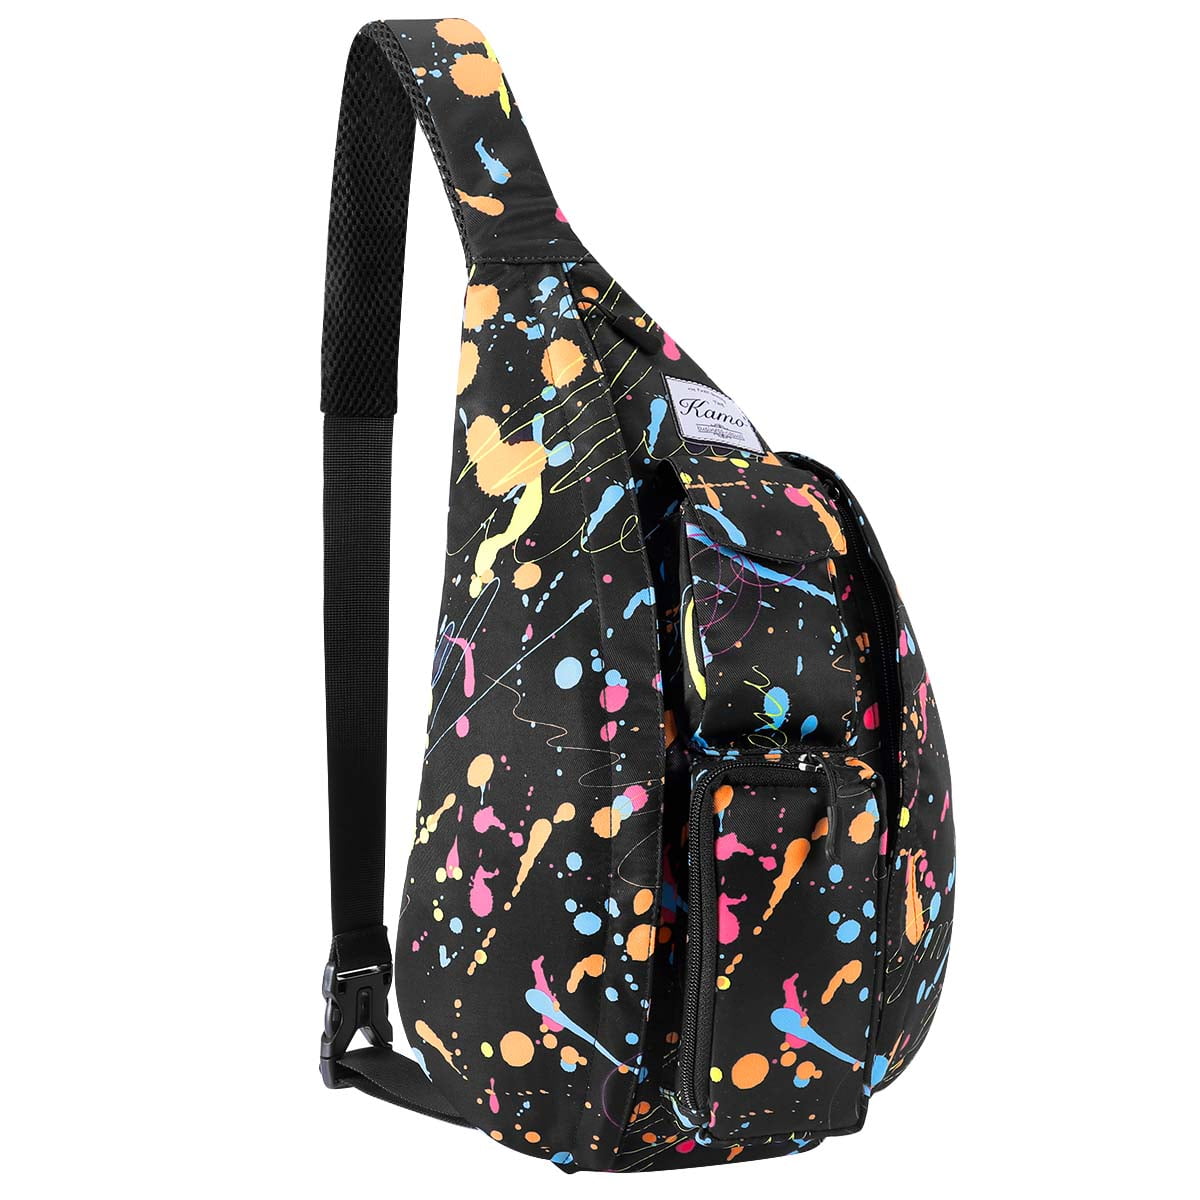 Kawell - Sling Backpack - Rope Bag Crossbody Backpack Travel Multipurpose Daypacks for Men Women ...